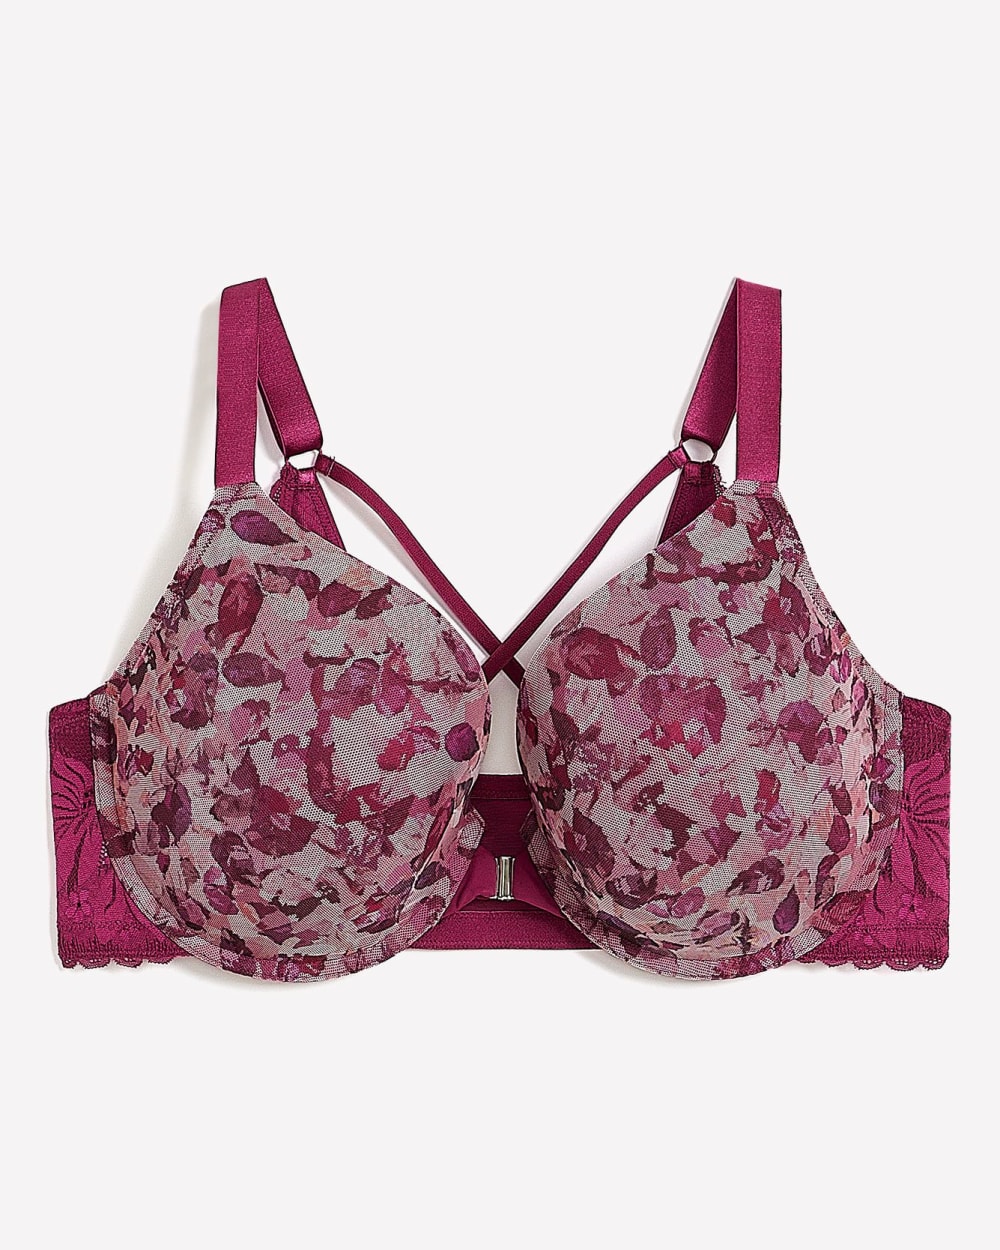 Underwired bra in raspberry Flower Elegance